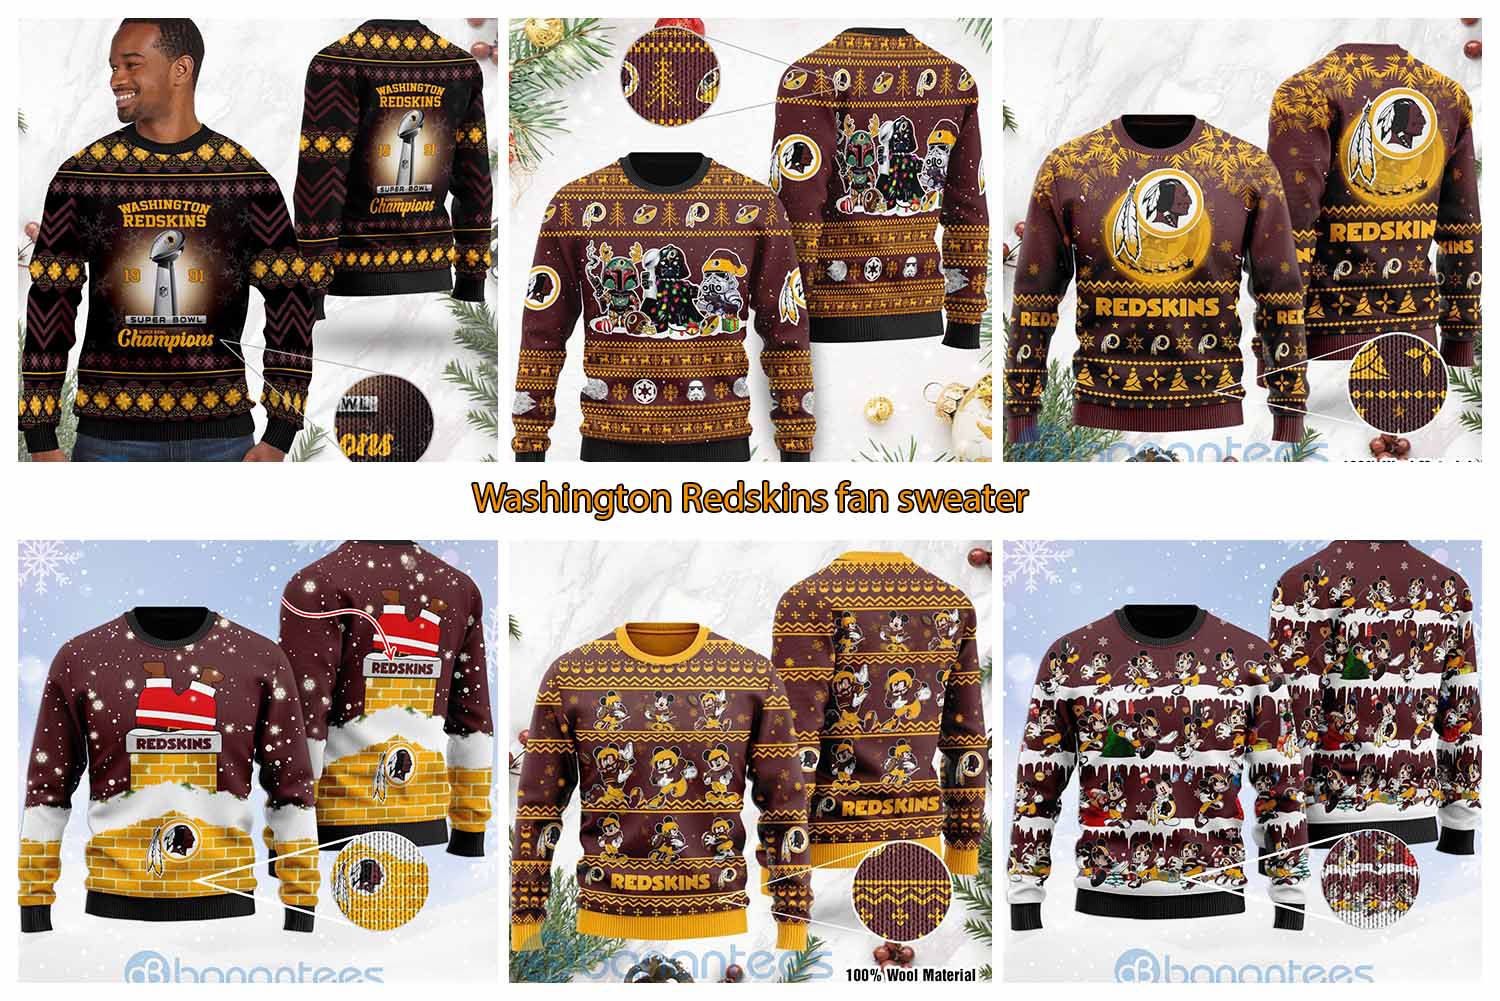 Washington Redskins fan sweater